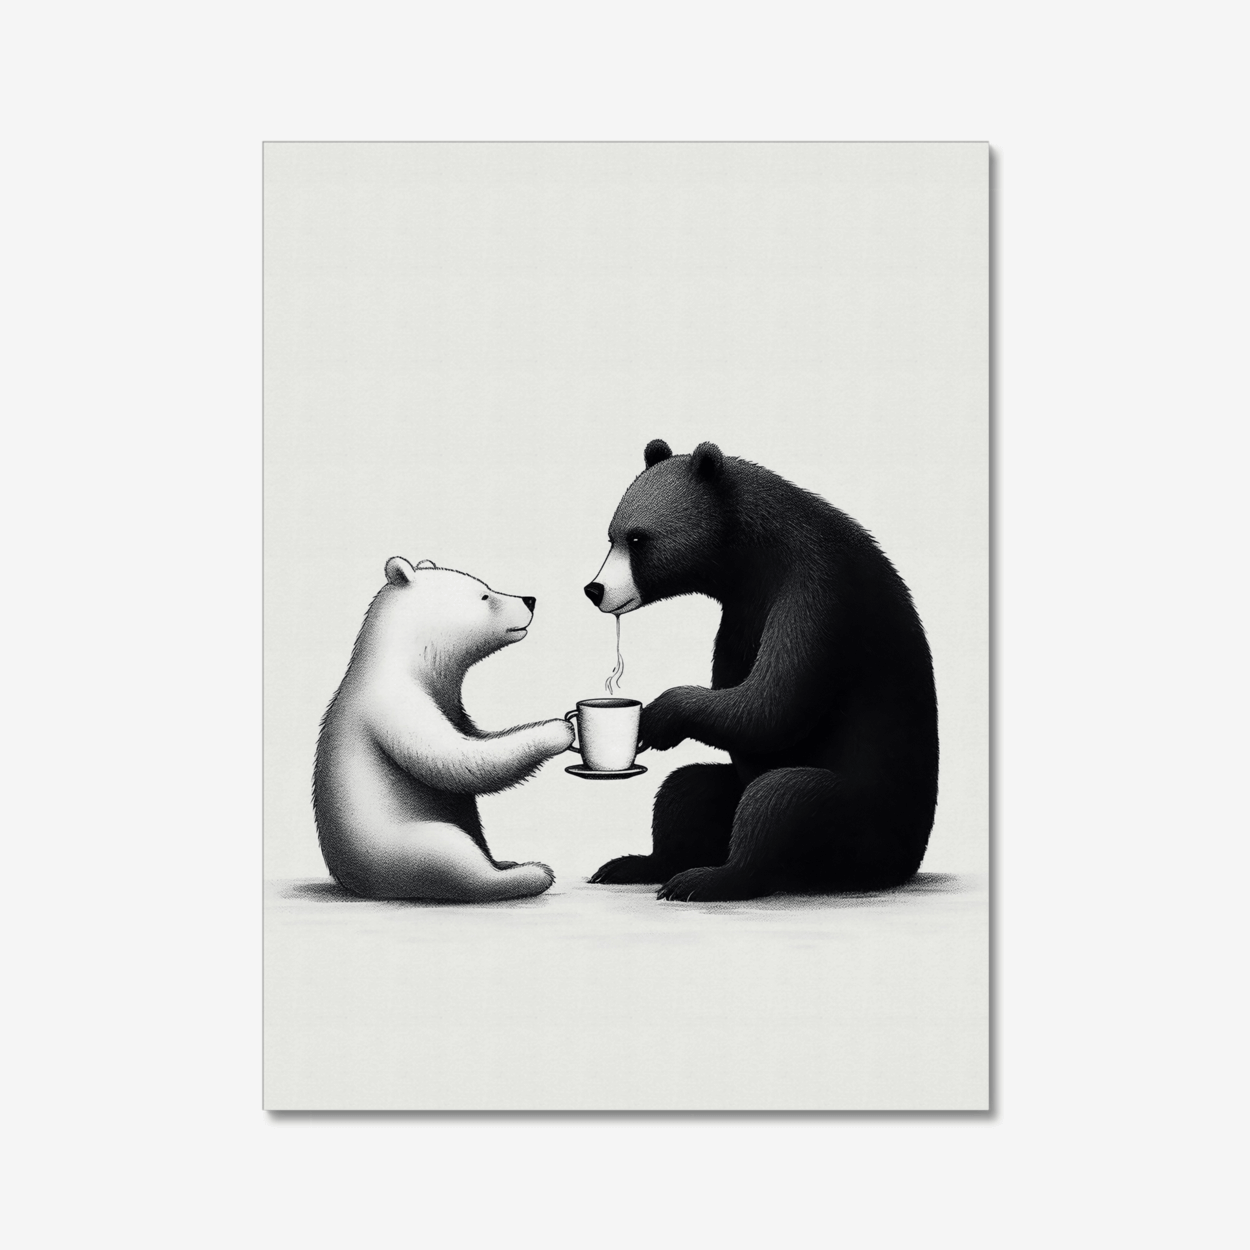 Bears sharing coffee